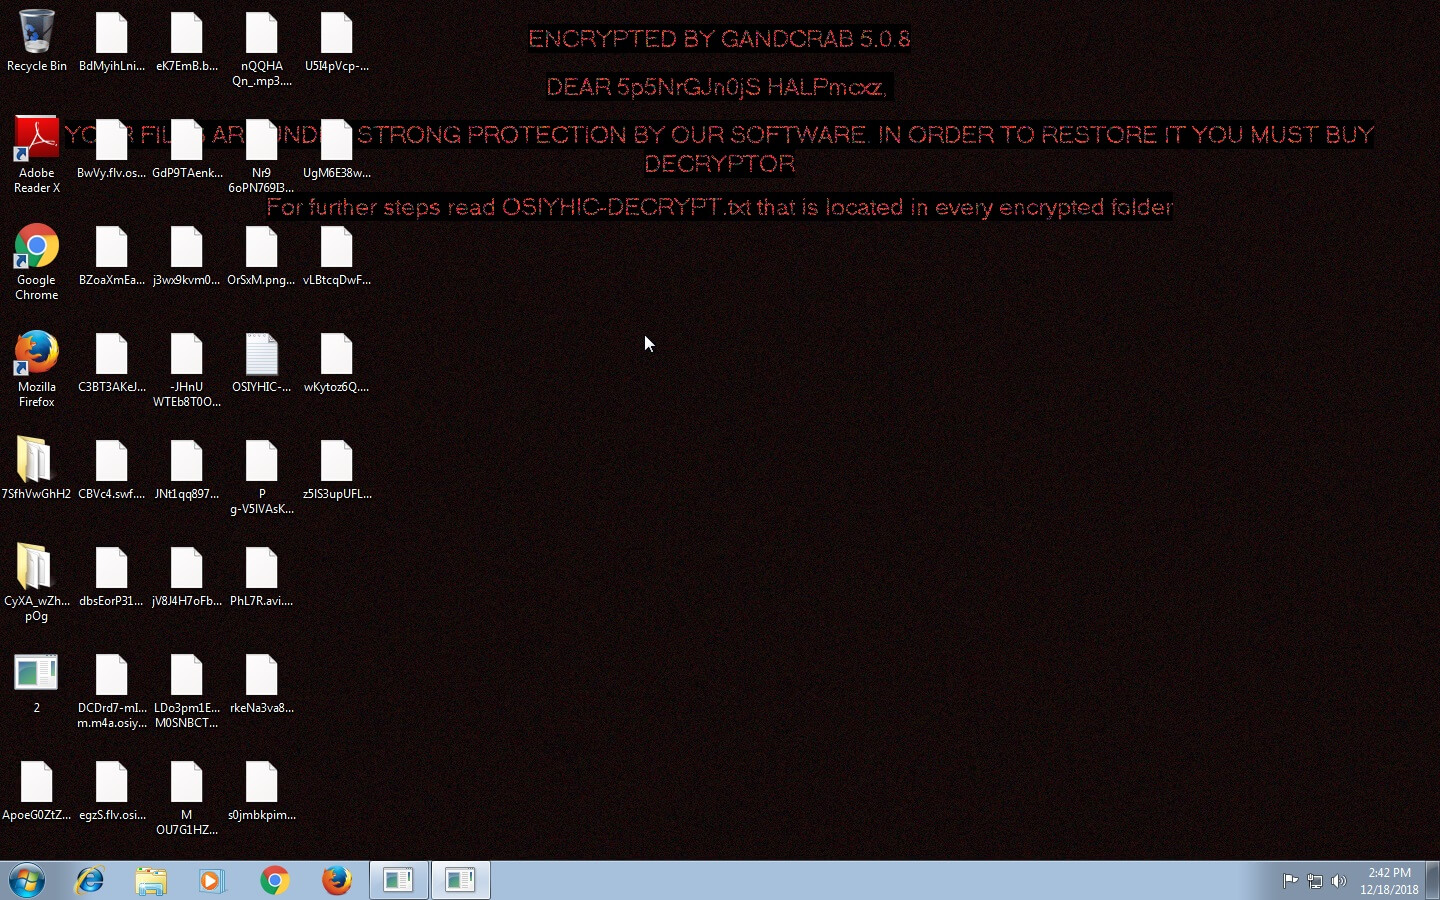 GandCrab 5.0.8 ransomware virus desktop background